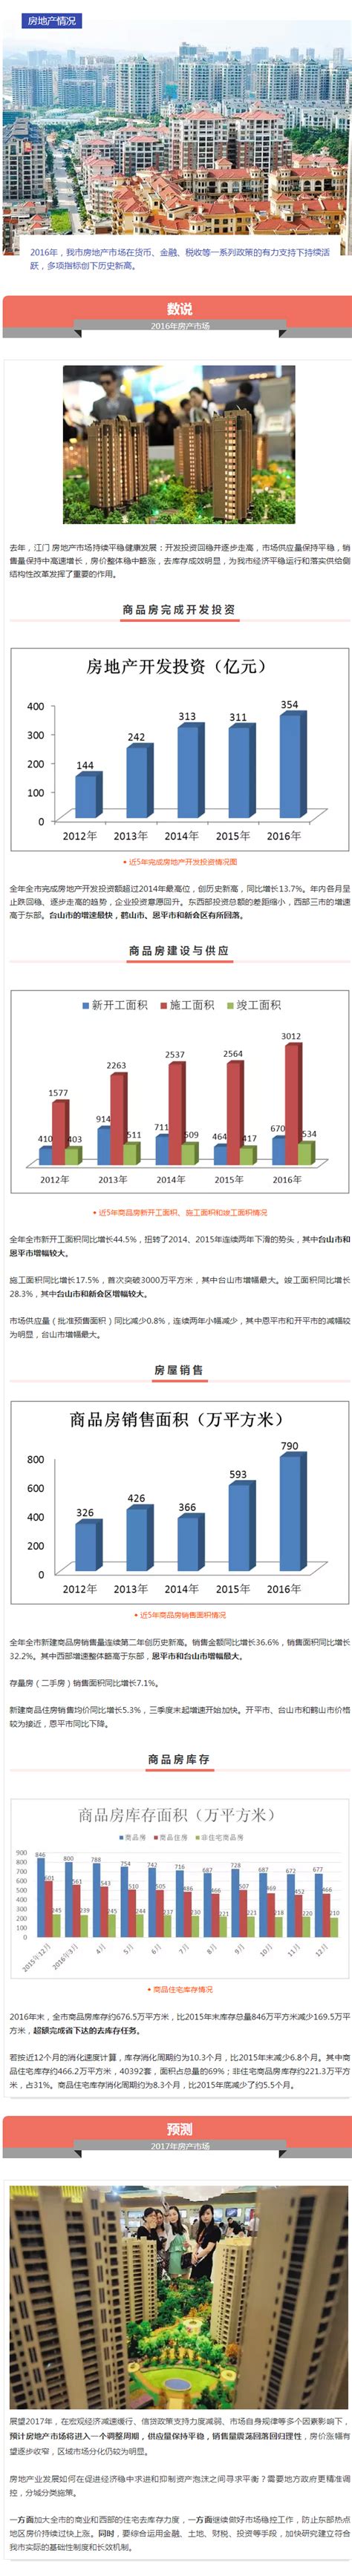 江门新登记市场主体近19.3万户 新会占比最高_广东频道_凤凰网